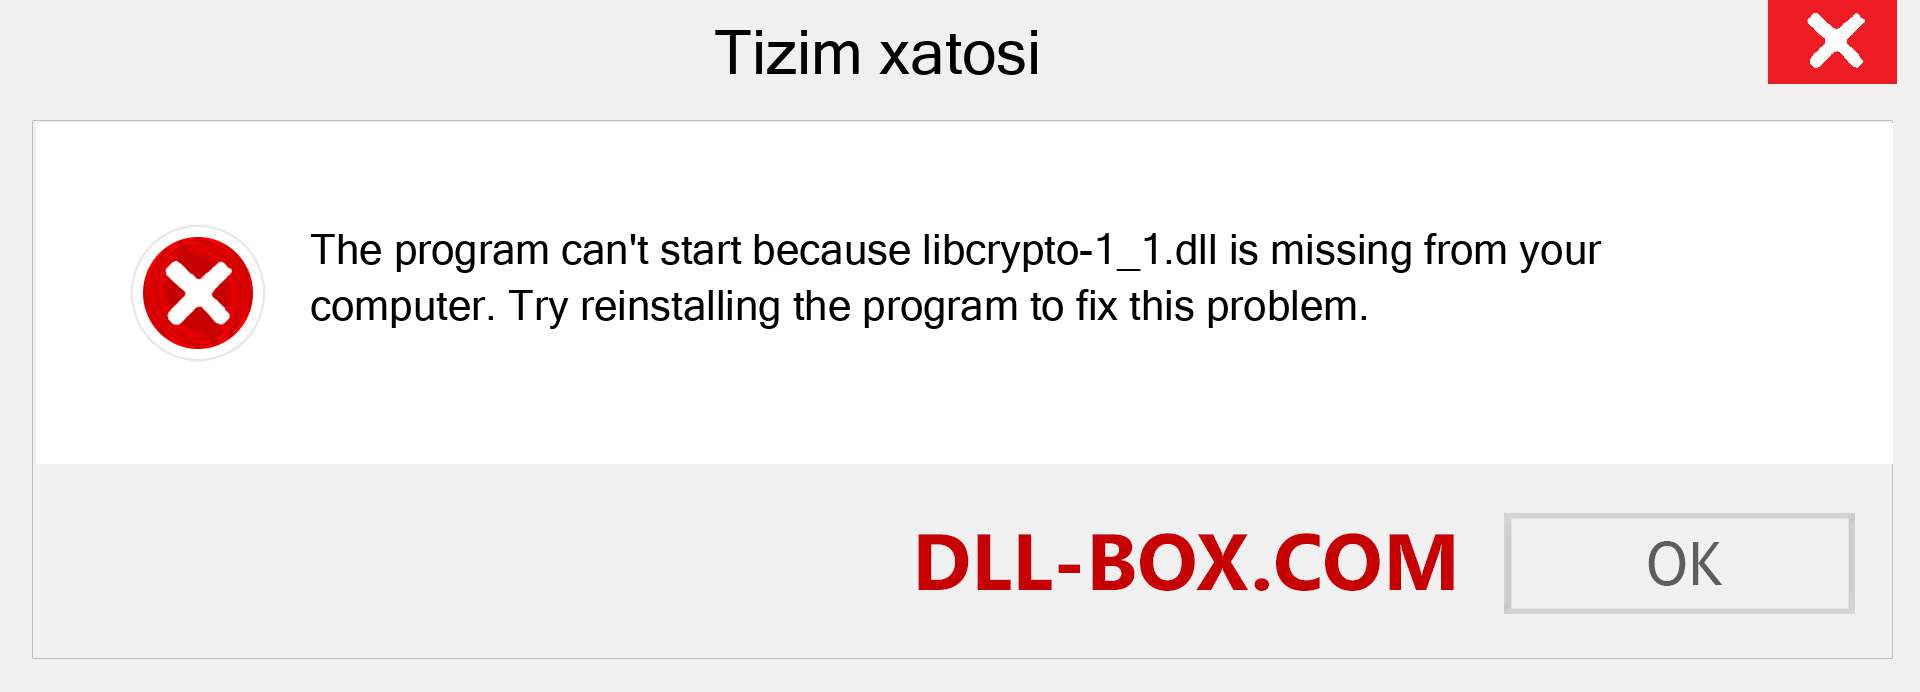 libcrypto-1_1.dll fayli yo'qolganmi?. Windows 7, 8, 10 uchun yuklab olish - Windowsda libcrypto-1_1 dll etishmayotgan xatoni tuzating, rasmlar, rasmlar